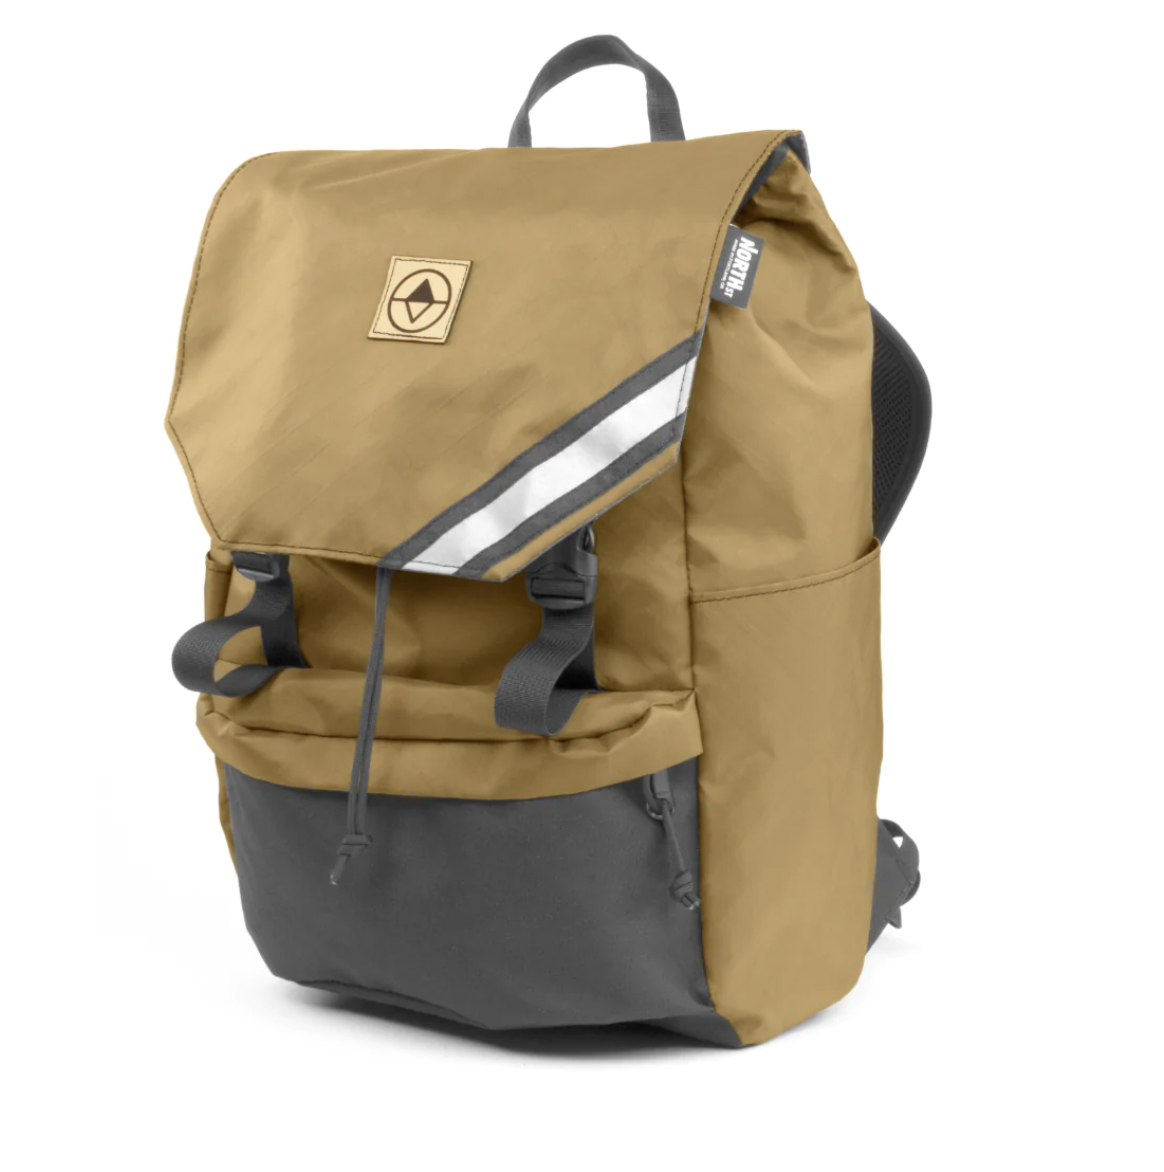 UNDERONESKY BACKPACK in 2023  Backpacks, Man bag, Clothes design